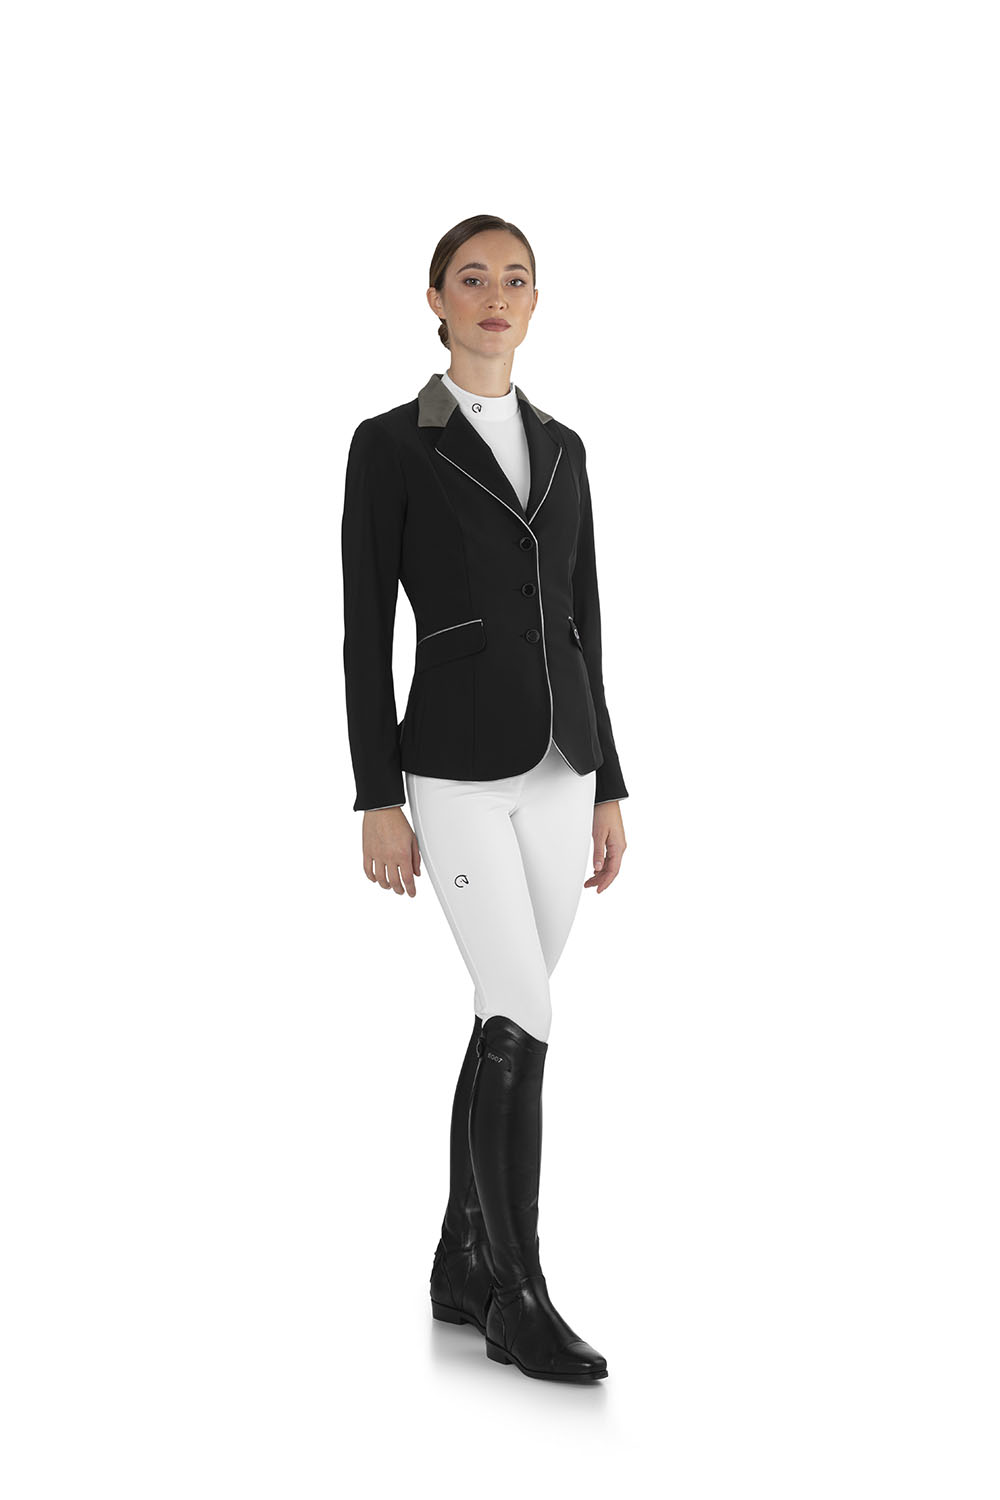 JELCL Elegance CL jacket-side-black 100